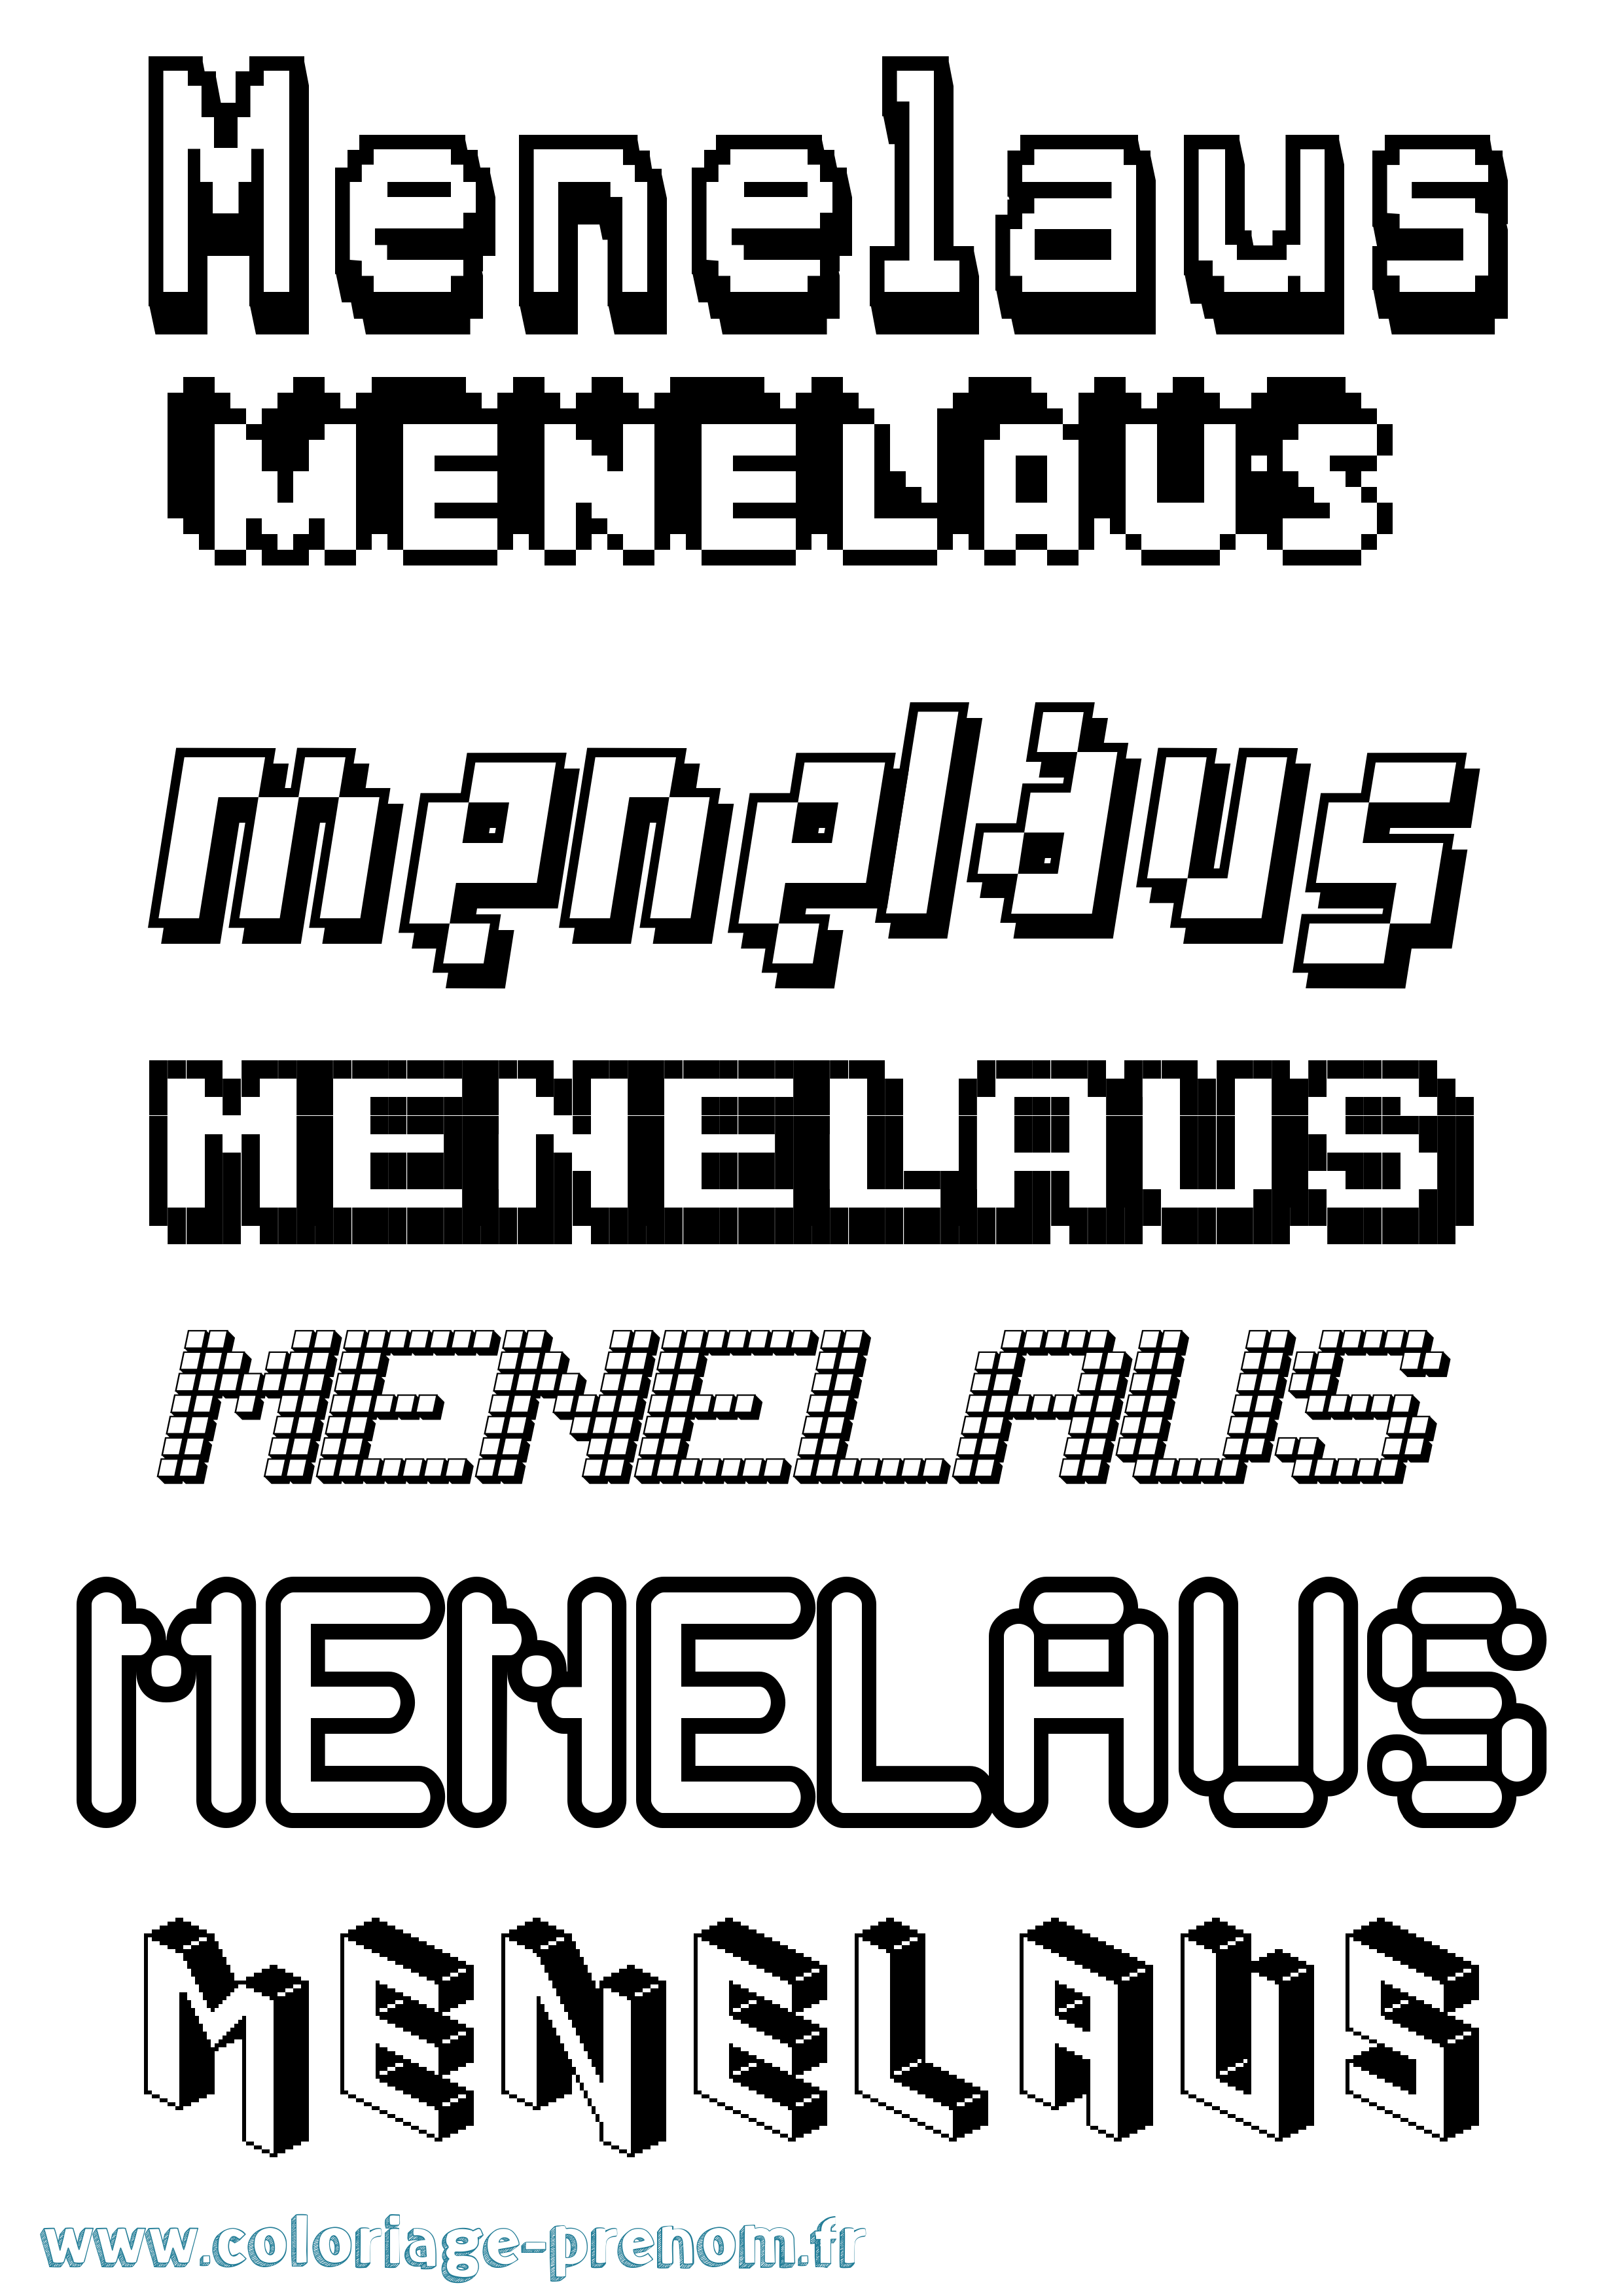 Coloriage prénom Menelaus Pixel